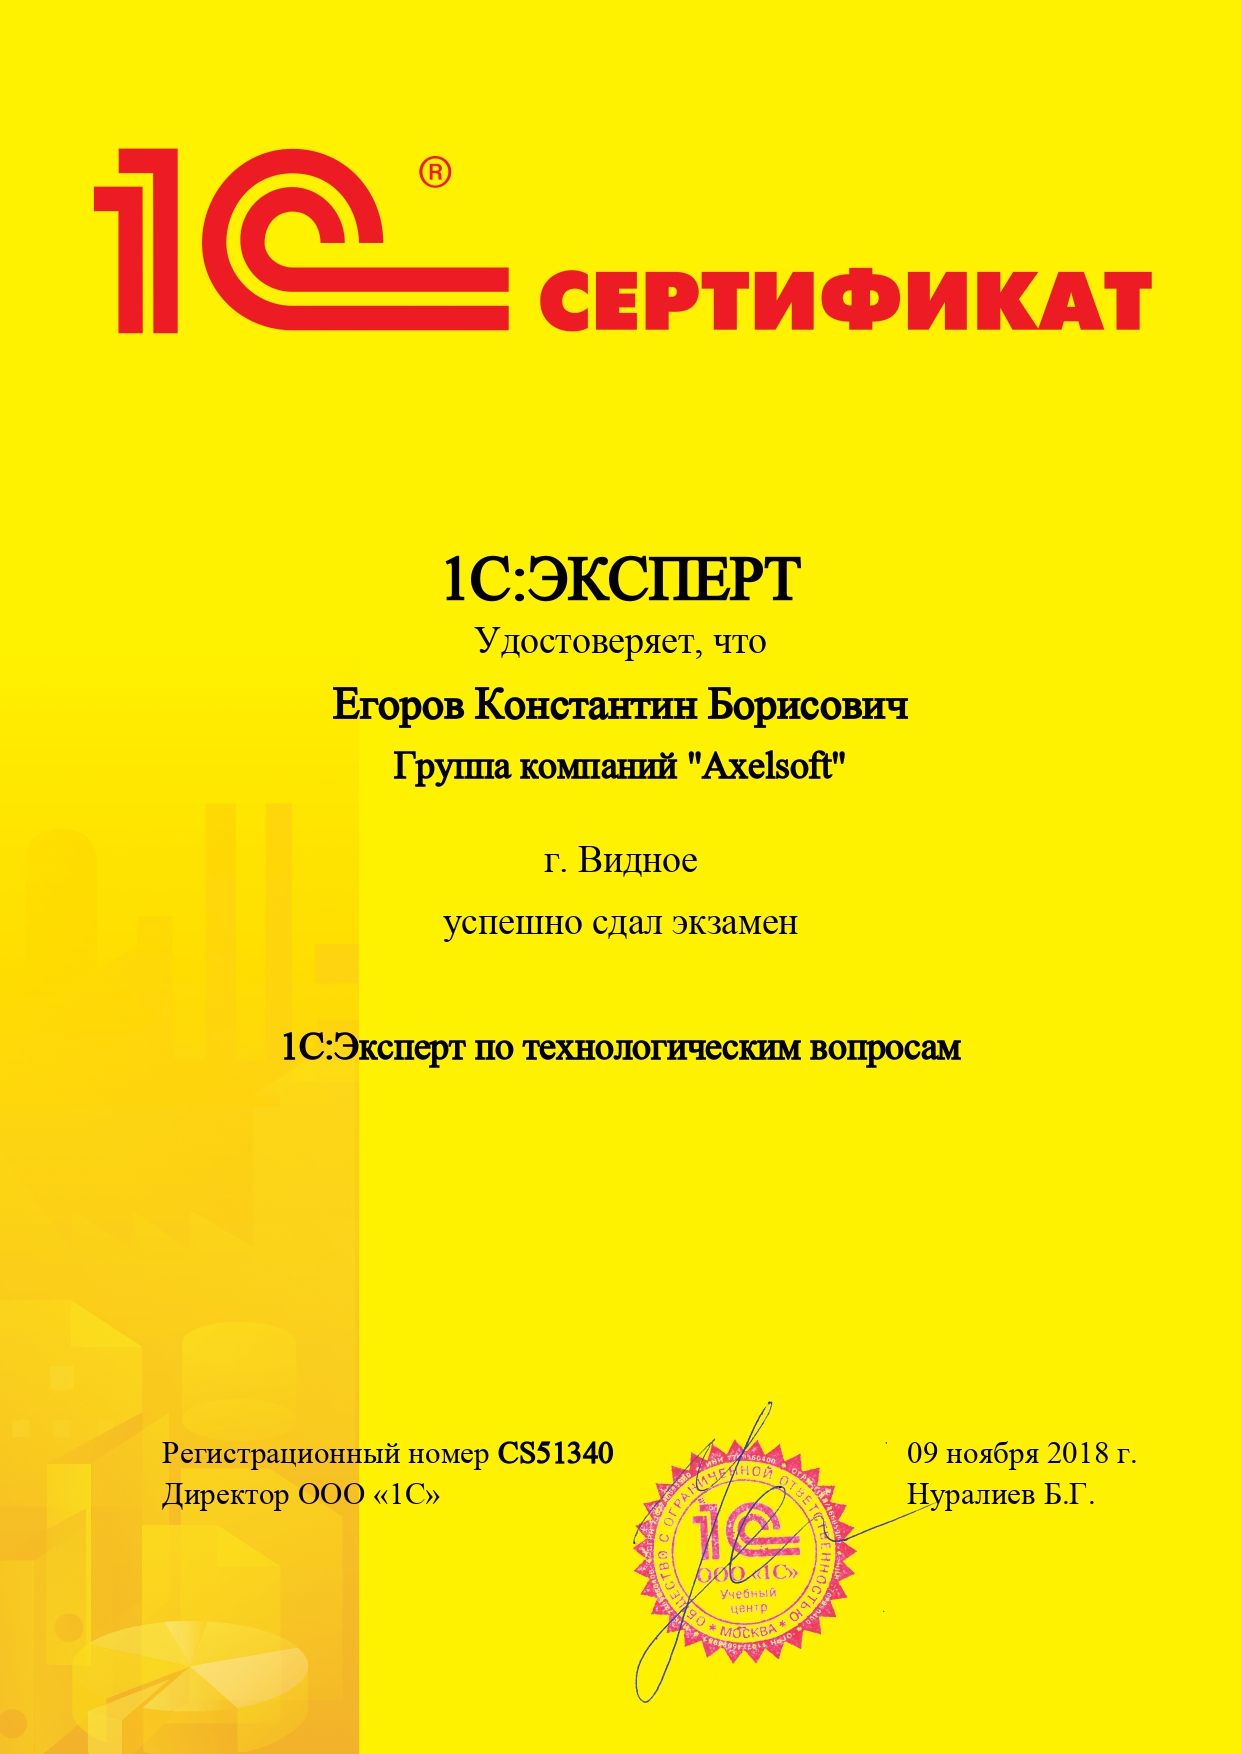 Сертификат специалиста 8